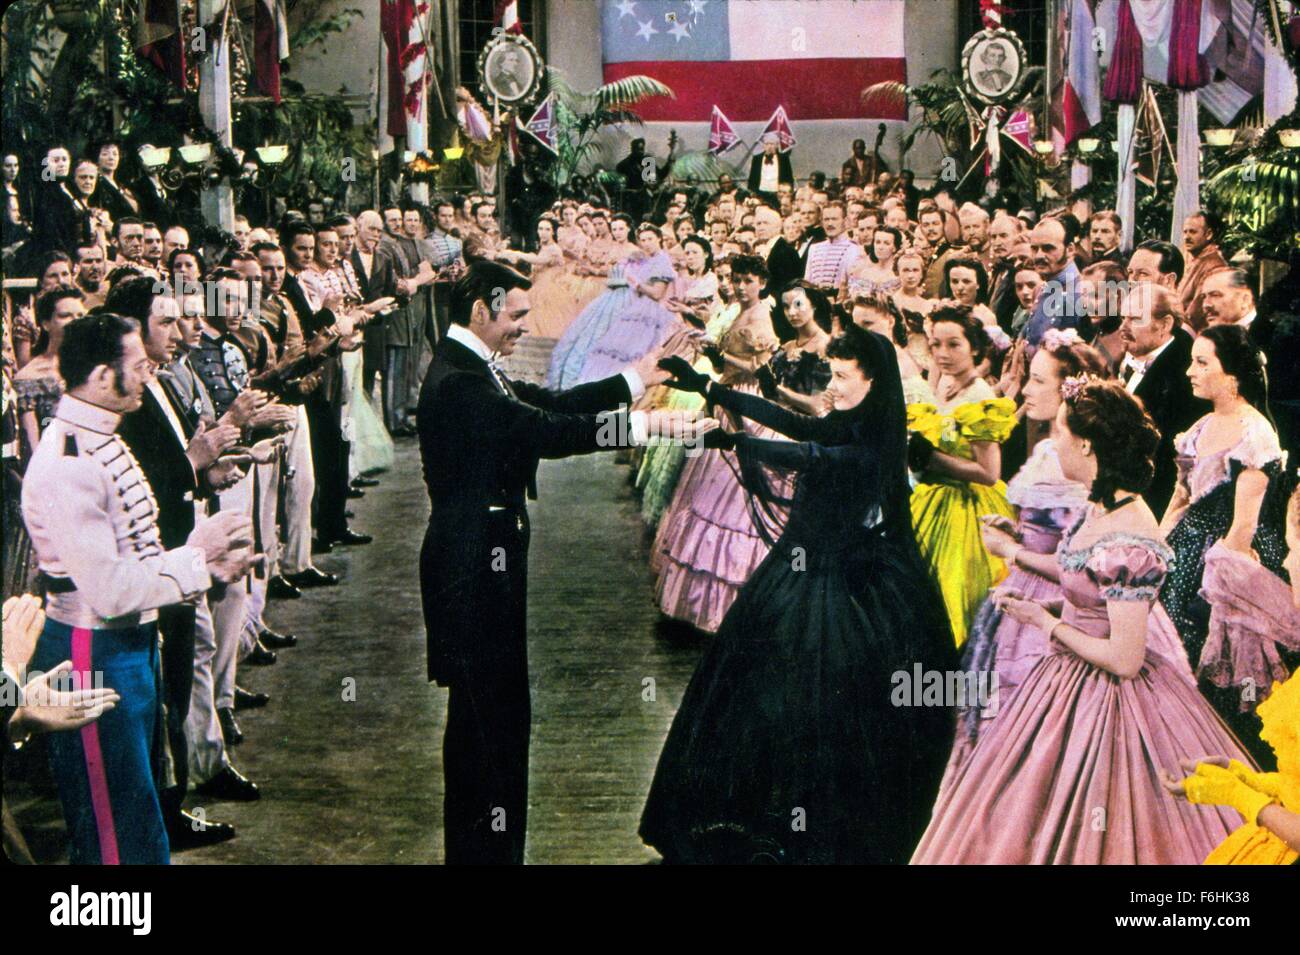 1939, Filmtitel: GONE WITH THE WIND, Regie: VICTOR FLEMING, Studio: MGM, abgebildet: 1939, AWARDS - Akademie, das beste Bild, Zeichen, Kleidung, VICTOR FLEMING, CLARK GABLE, VIVIEN LEIGH, historischen KOSTÜMEN, RHETT BUTLER: Weg W/T WIND. (Bild Kredit: SNAP) Stockfoto